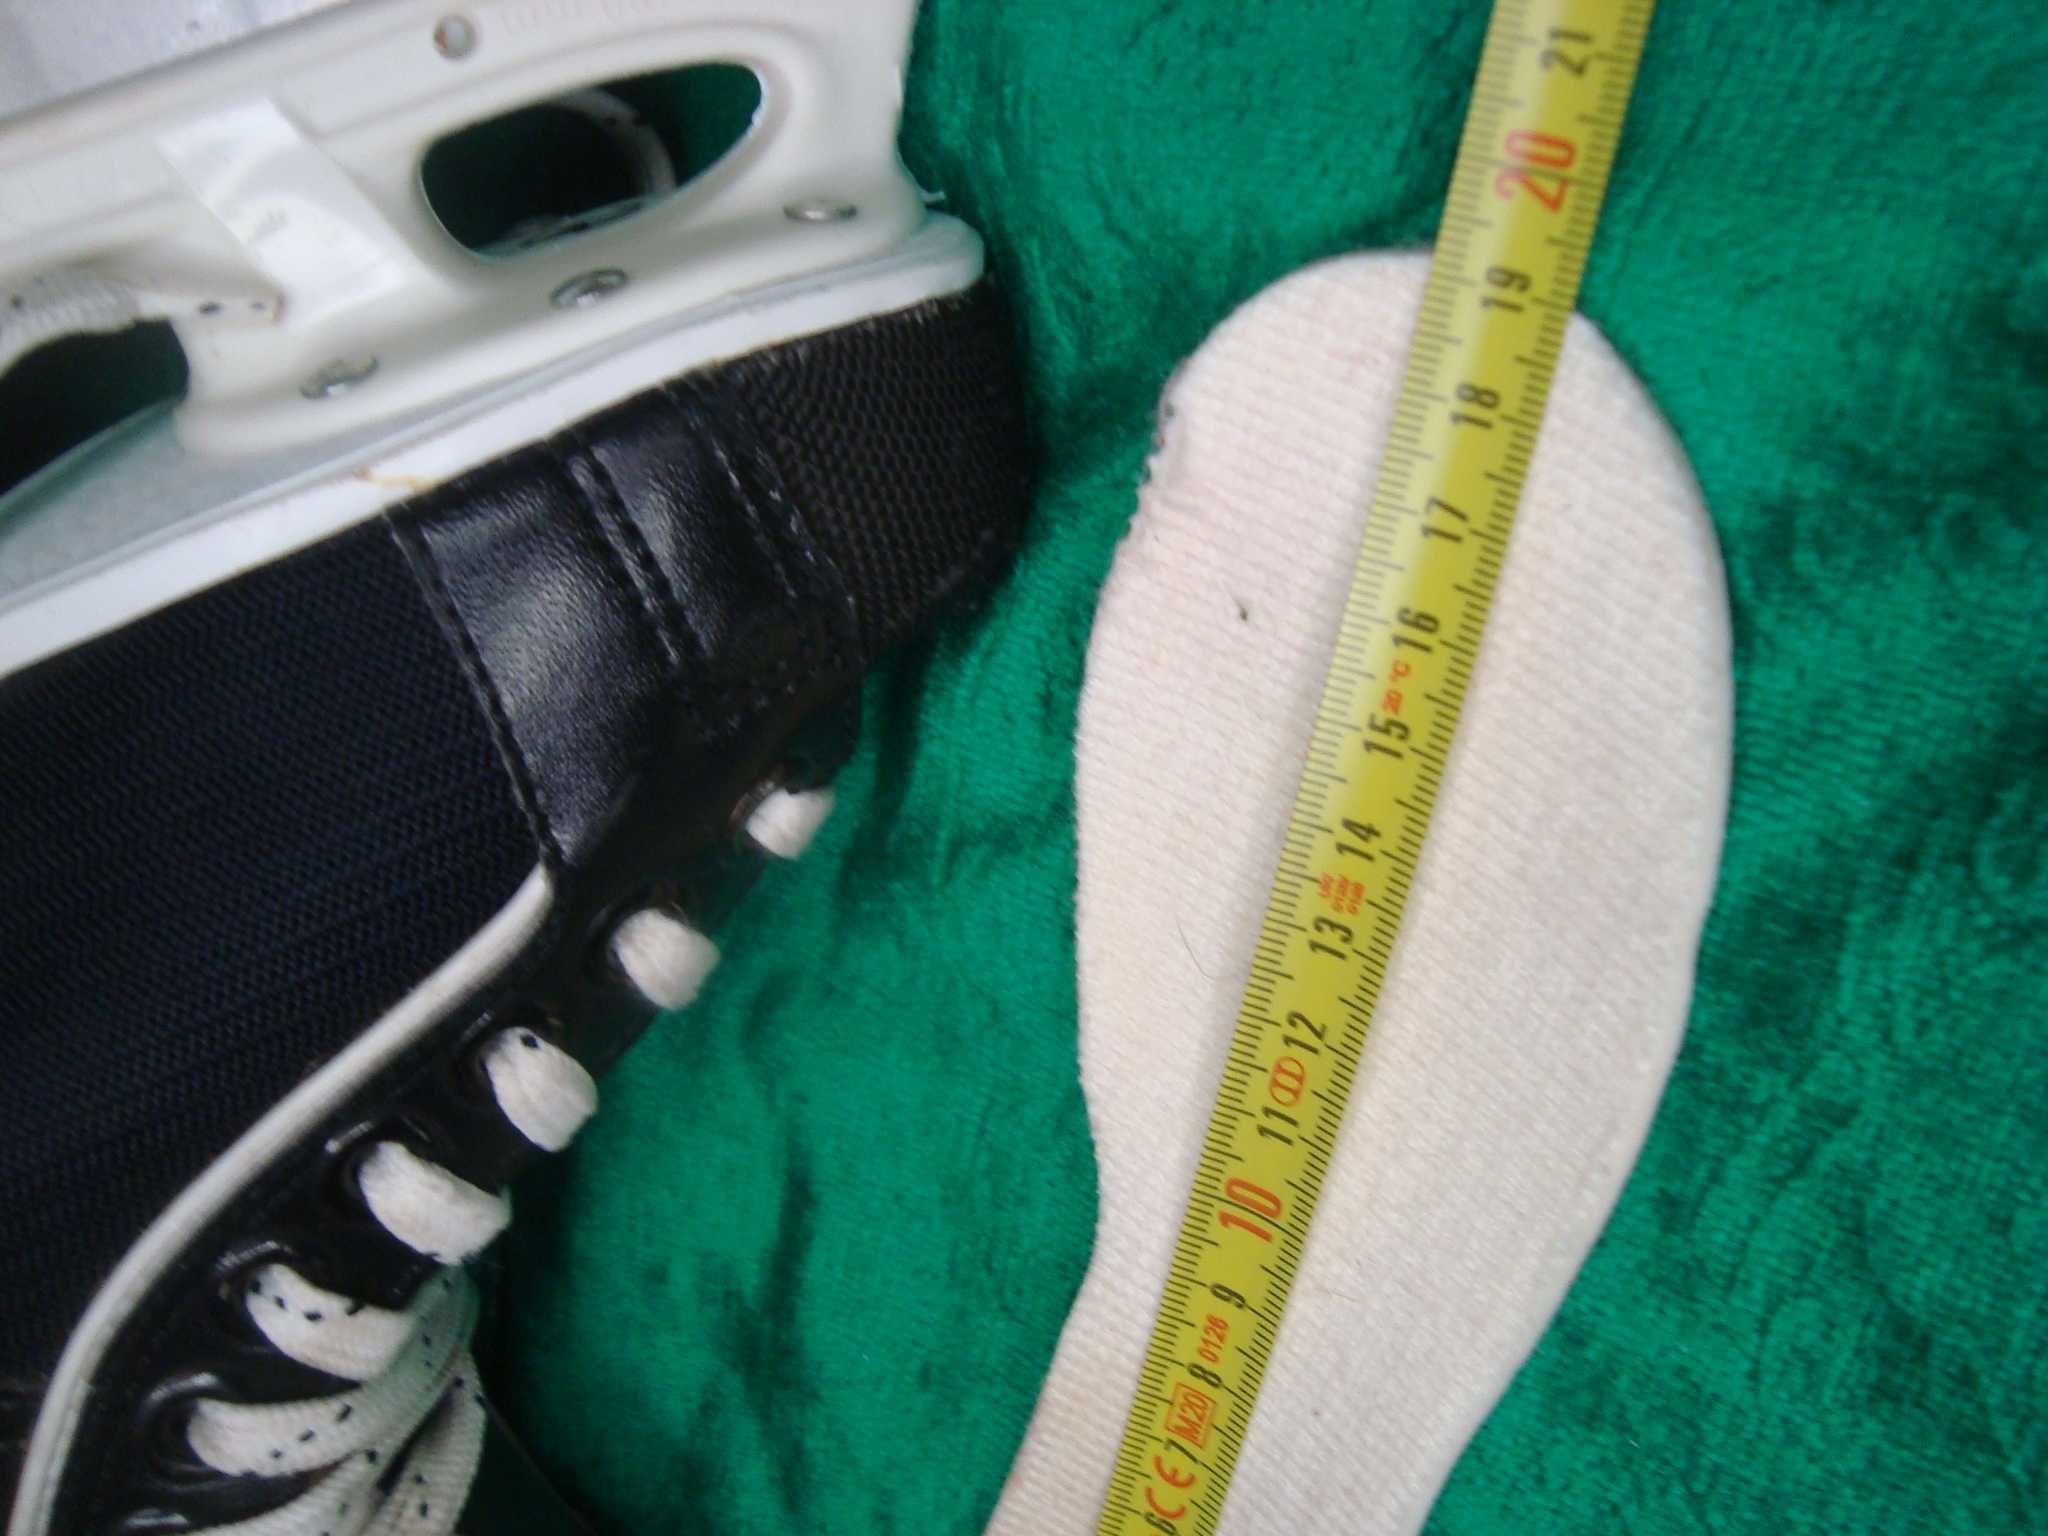 łyżwy hokejowe Kosa model ALL Star  roz 30 -19 cm Super